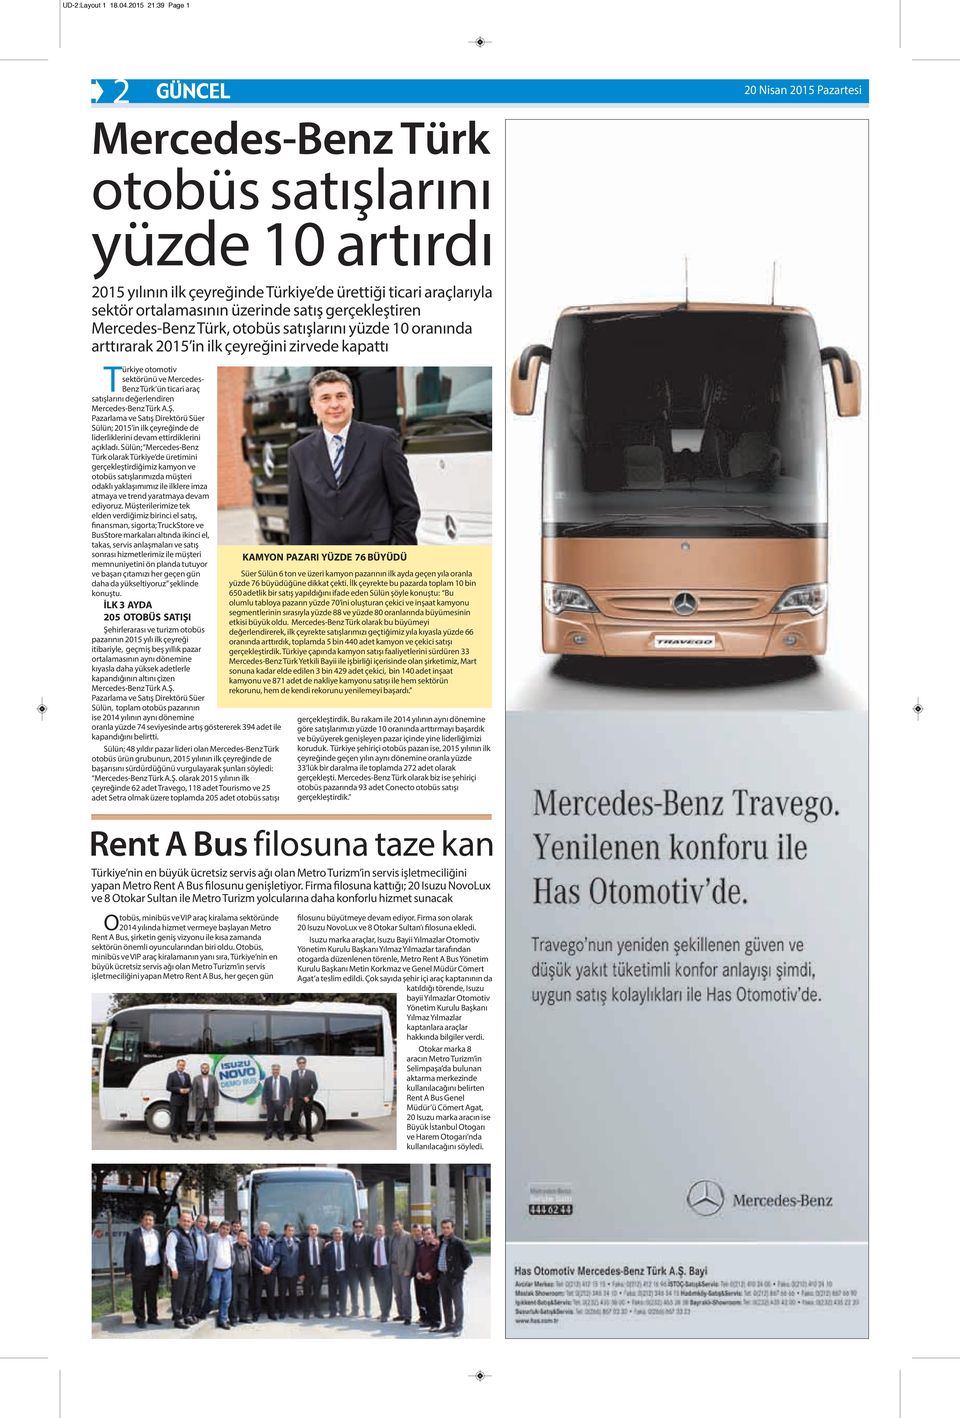 Mercedes-Benz Türk, otobüs satışlarını yüzde 10 oranında arttırarak 2015 in ilk çeyreğini zirvede kapattı Türkiye otomotiv sektörünü ve Mercedes- Benz Türk ün ticari araç satışlarını değerlendiren